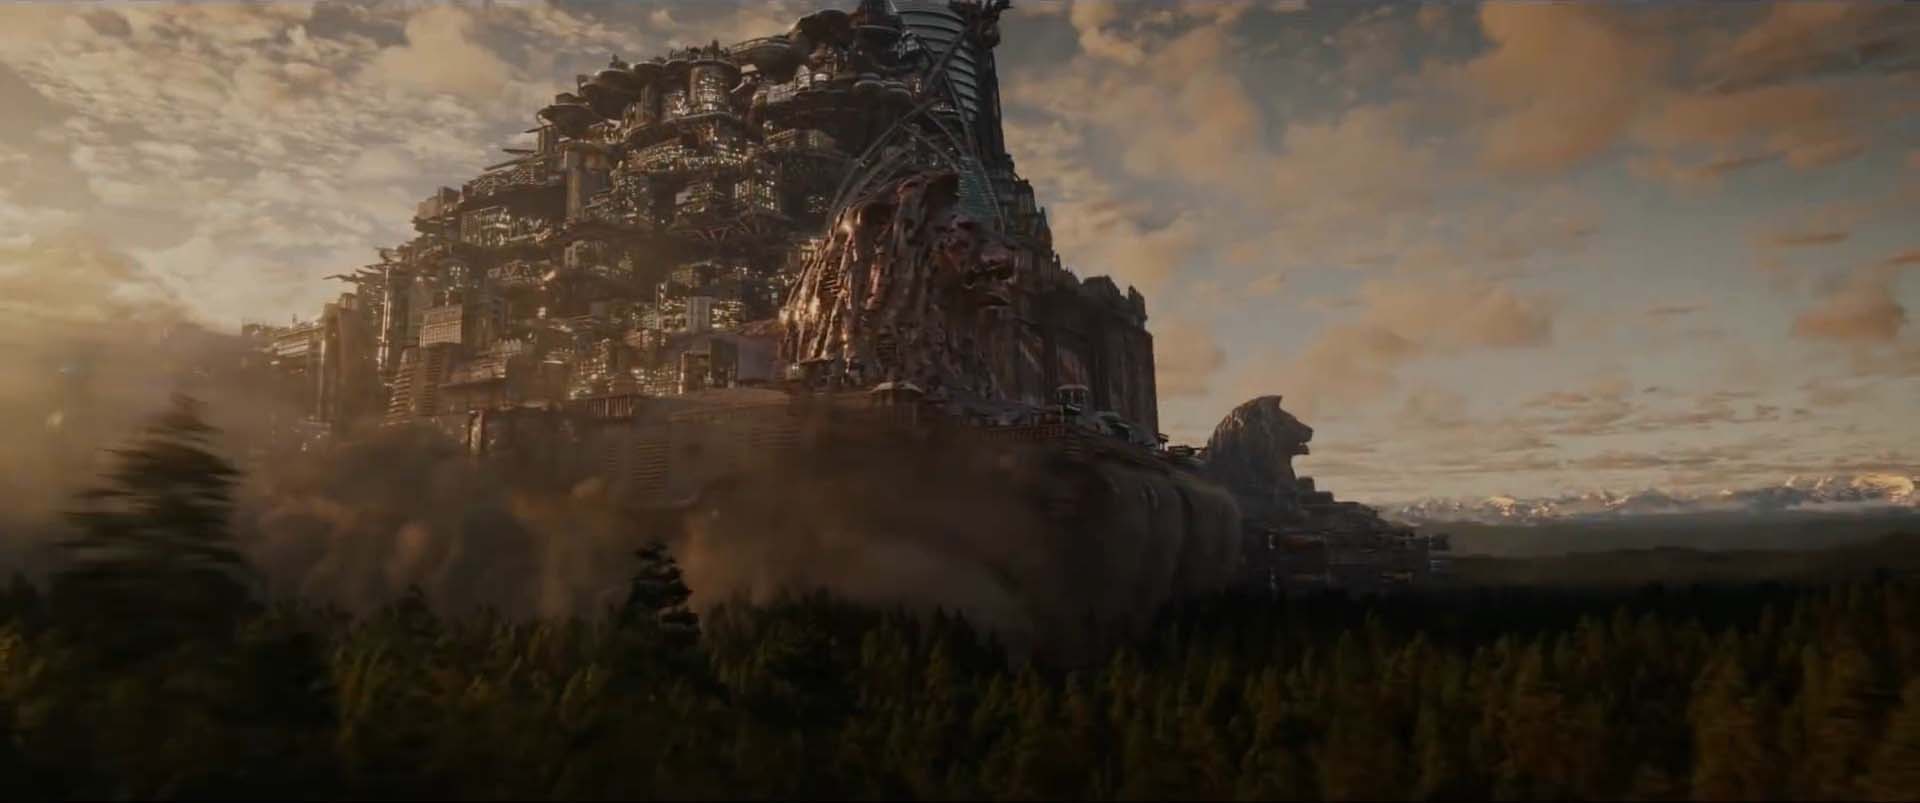 Režisér Pána prsteňov sa vracia s novou apokalypsou - Mortal Engines Trailer 2 02 - Režisér Pána prsteňov sa vracia s novou apokalypsou